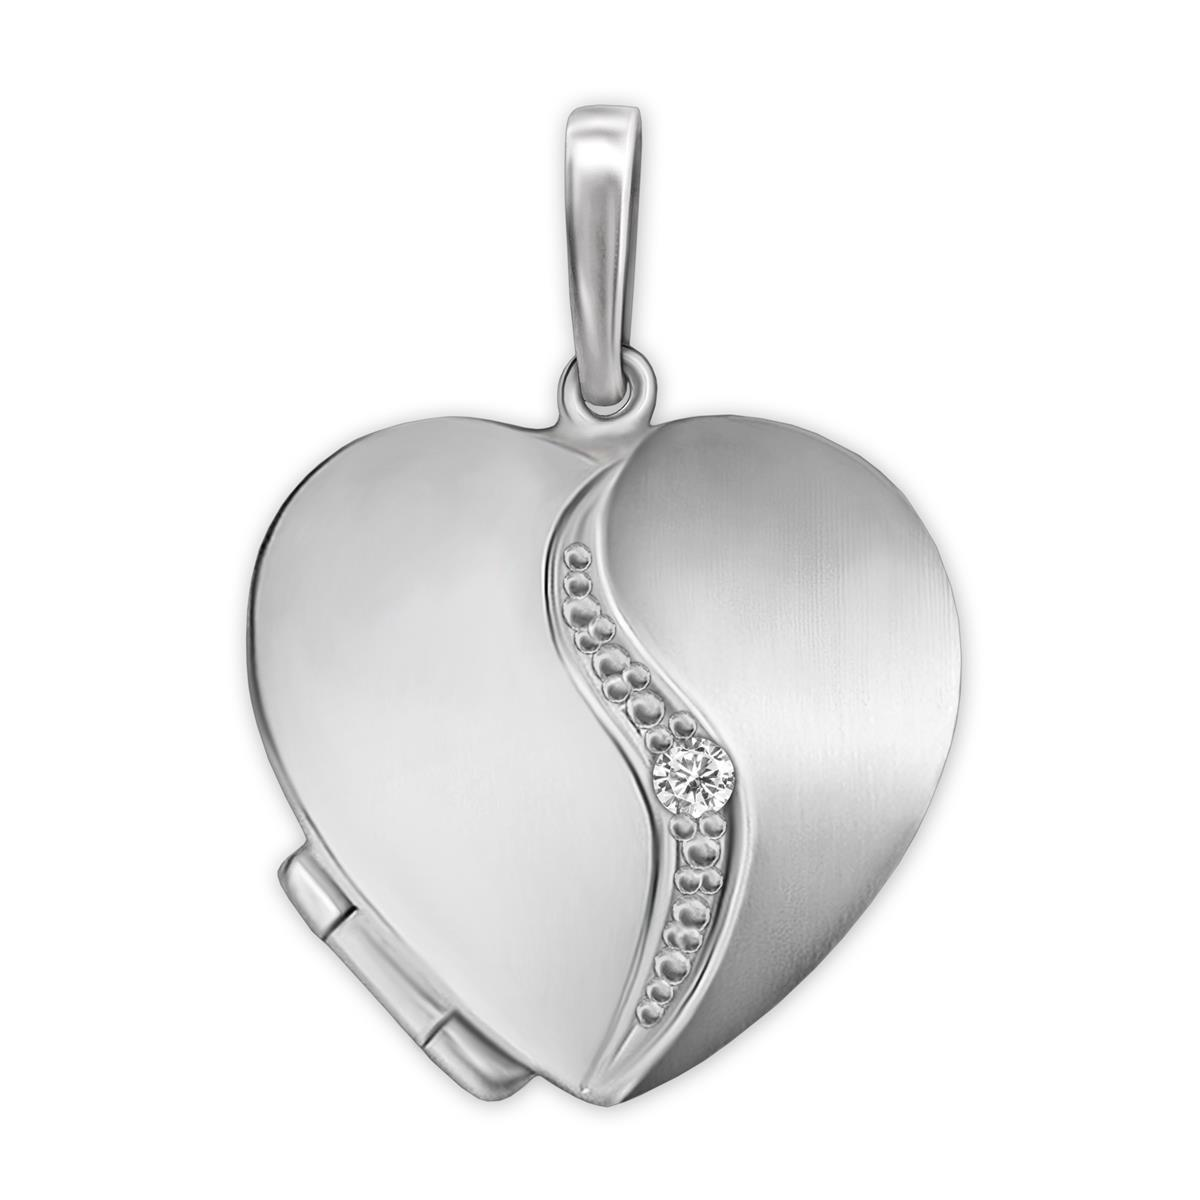 Silbermedaillon Herz Anhänger Herz matt und glänzend, geschwungener Bogen mit einem Zirkonia Echt Silber 925